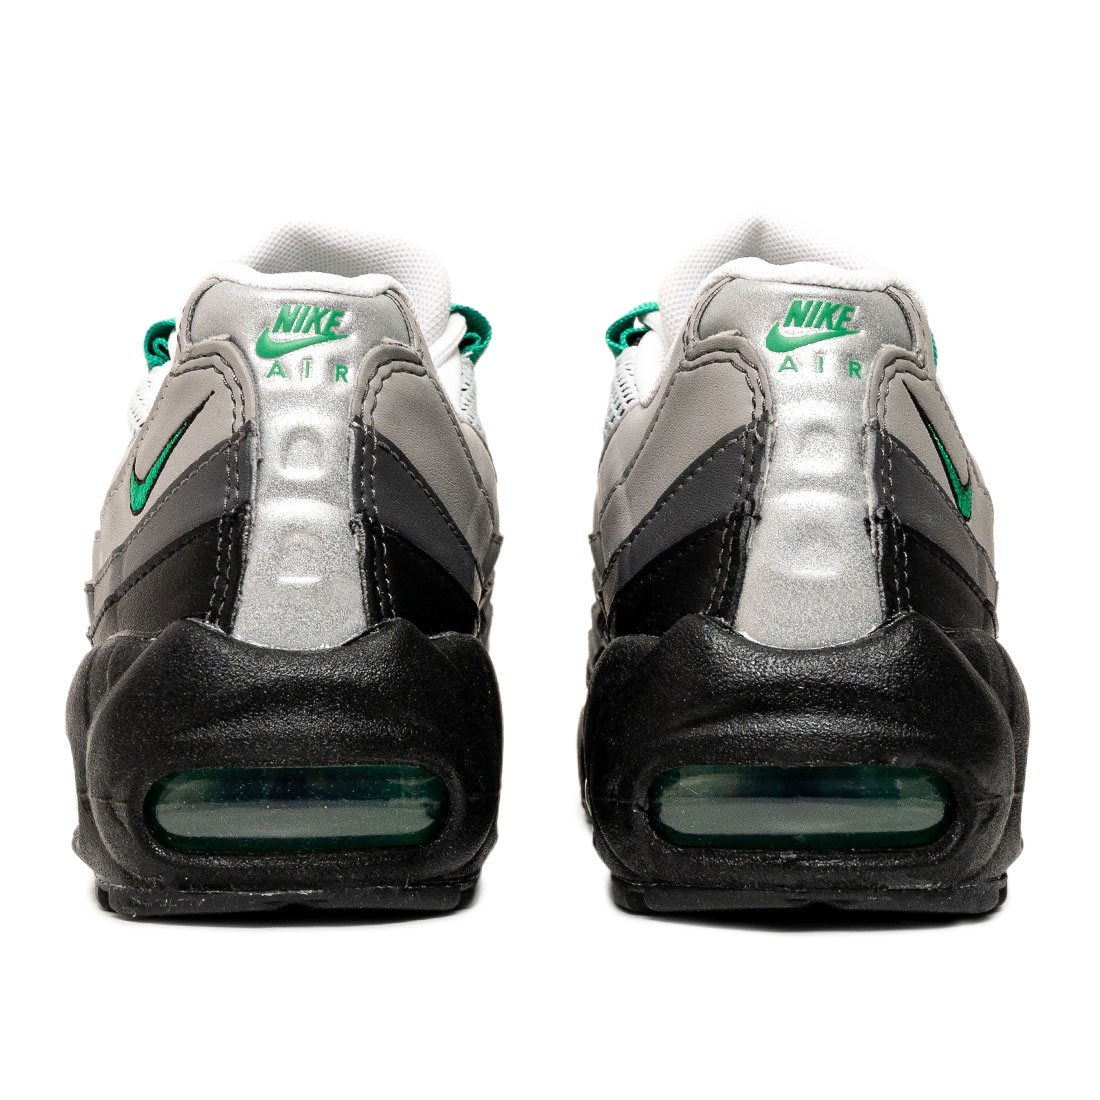 Nike Air Max 95 Black / Stadium Green / Pearl Grey - DH8015-002